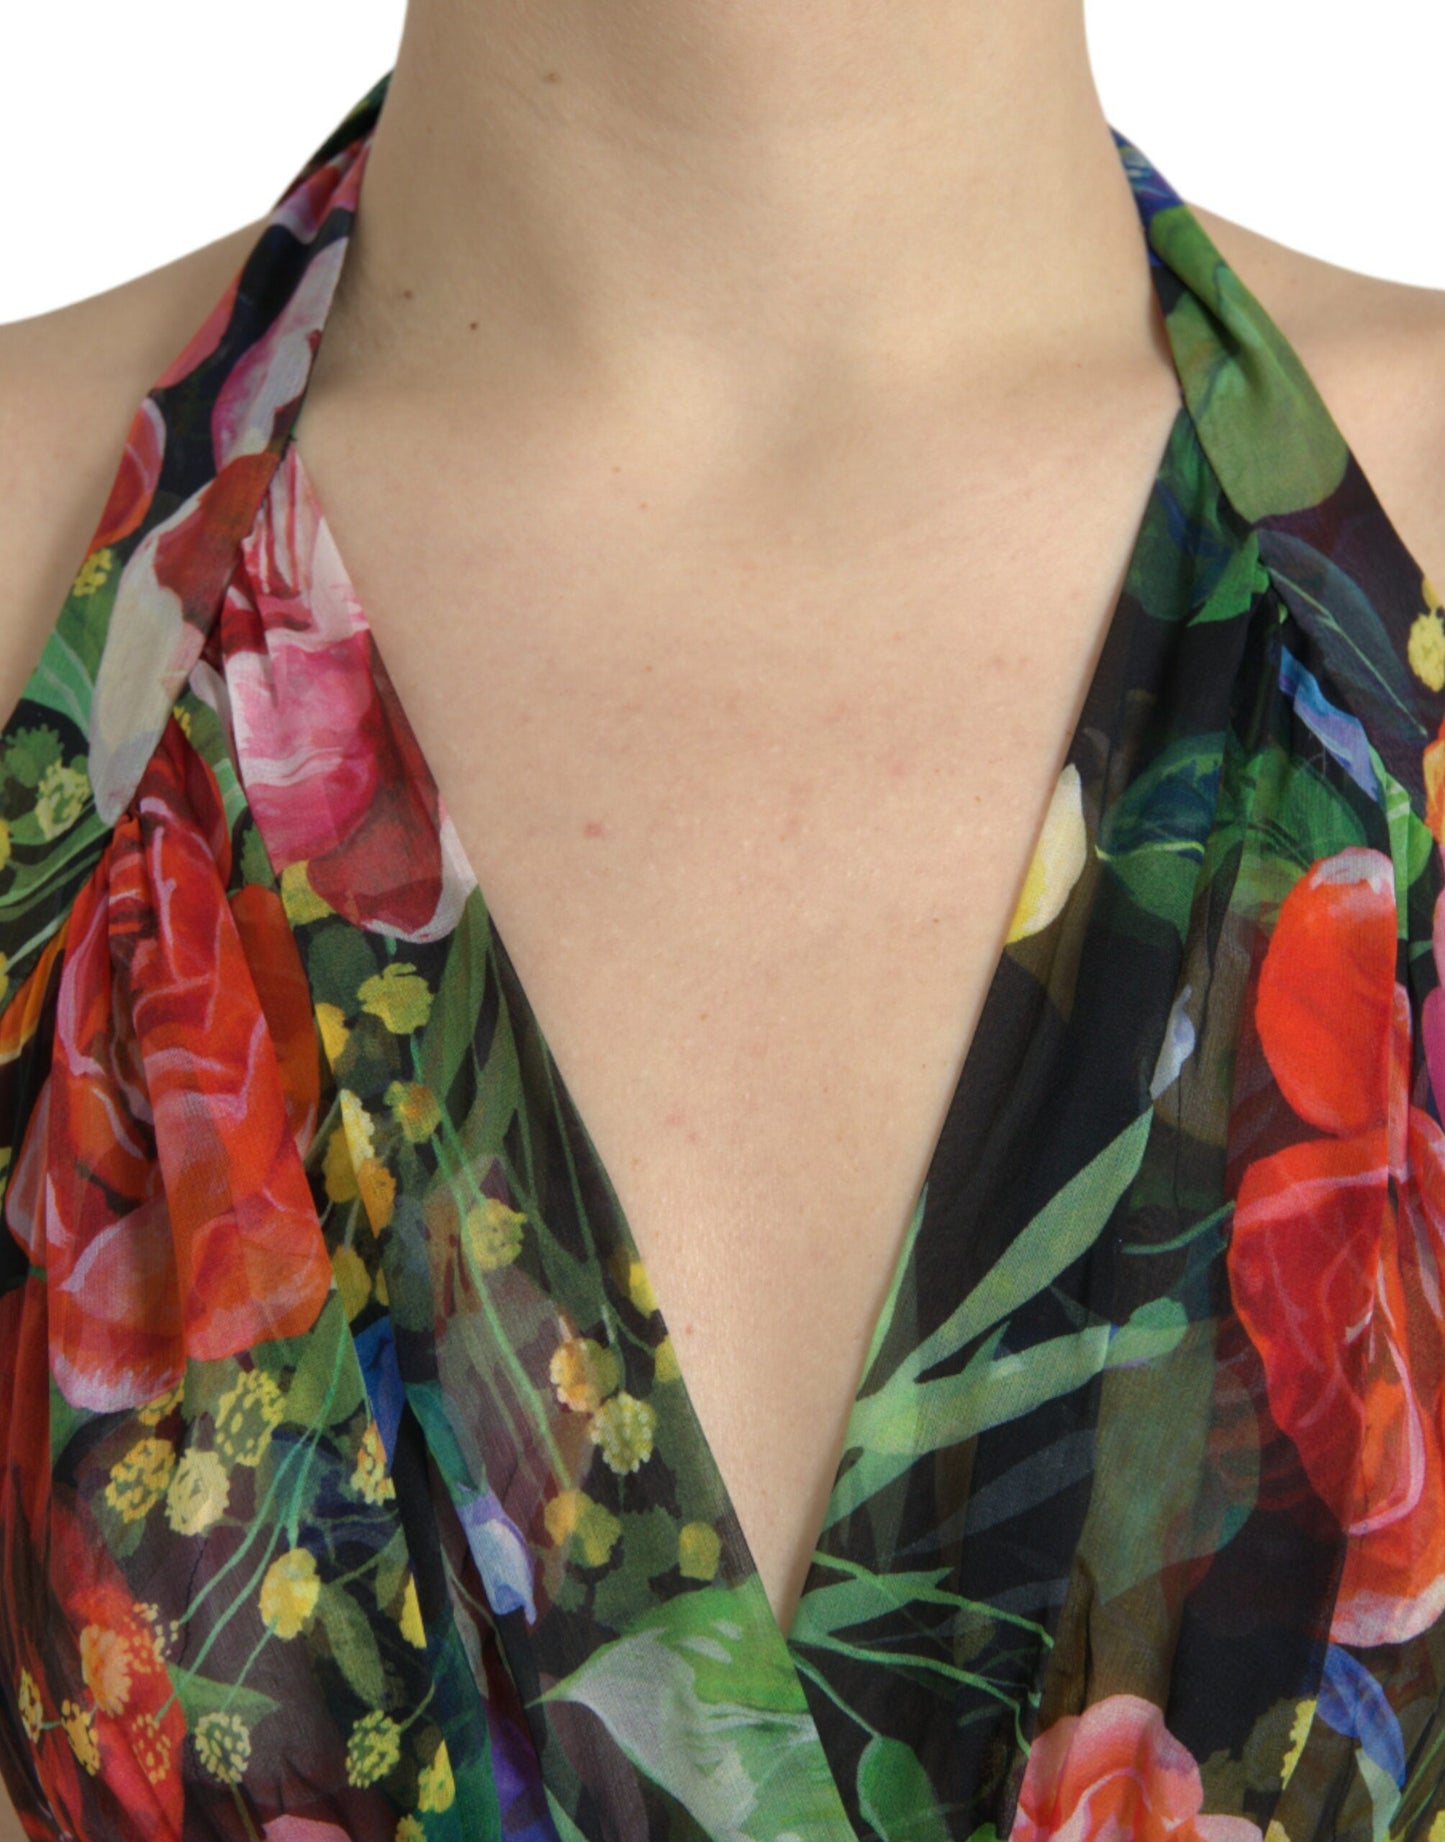 Chic Floral Maxi Slip Dress in Multicolor Silk